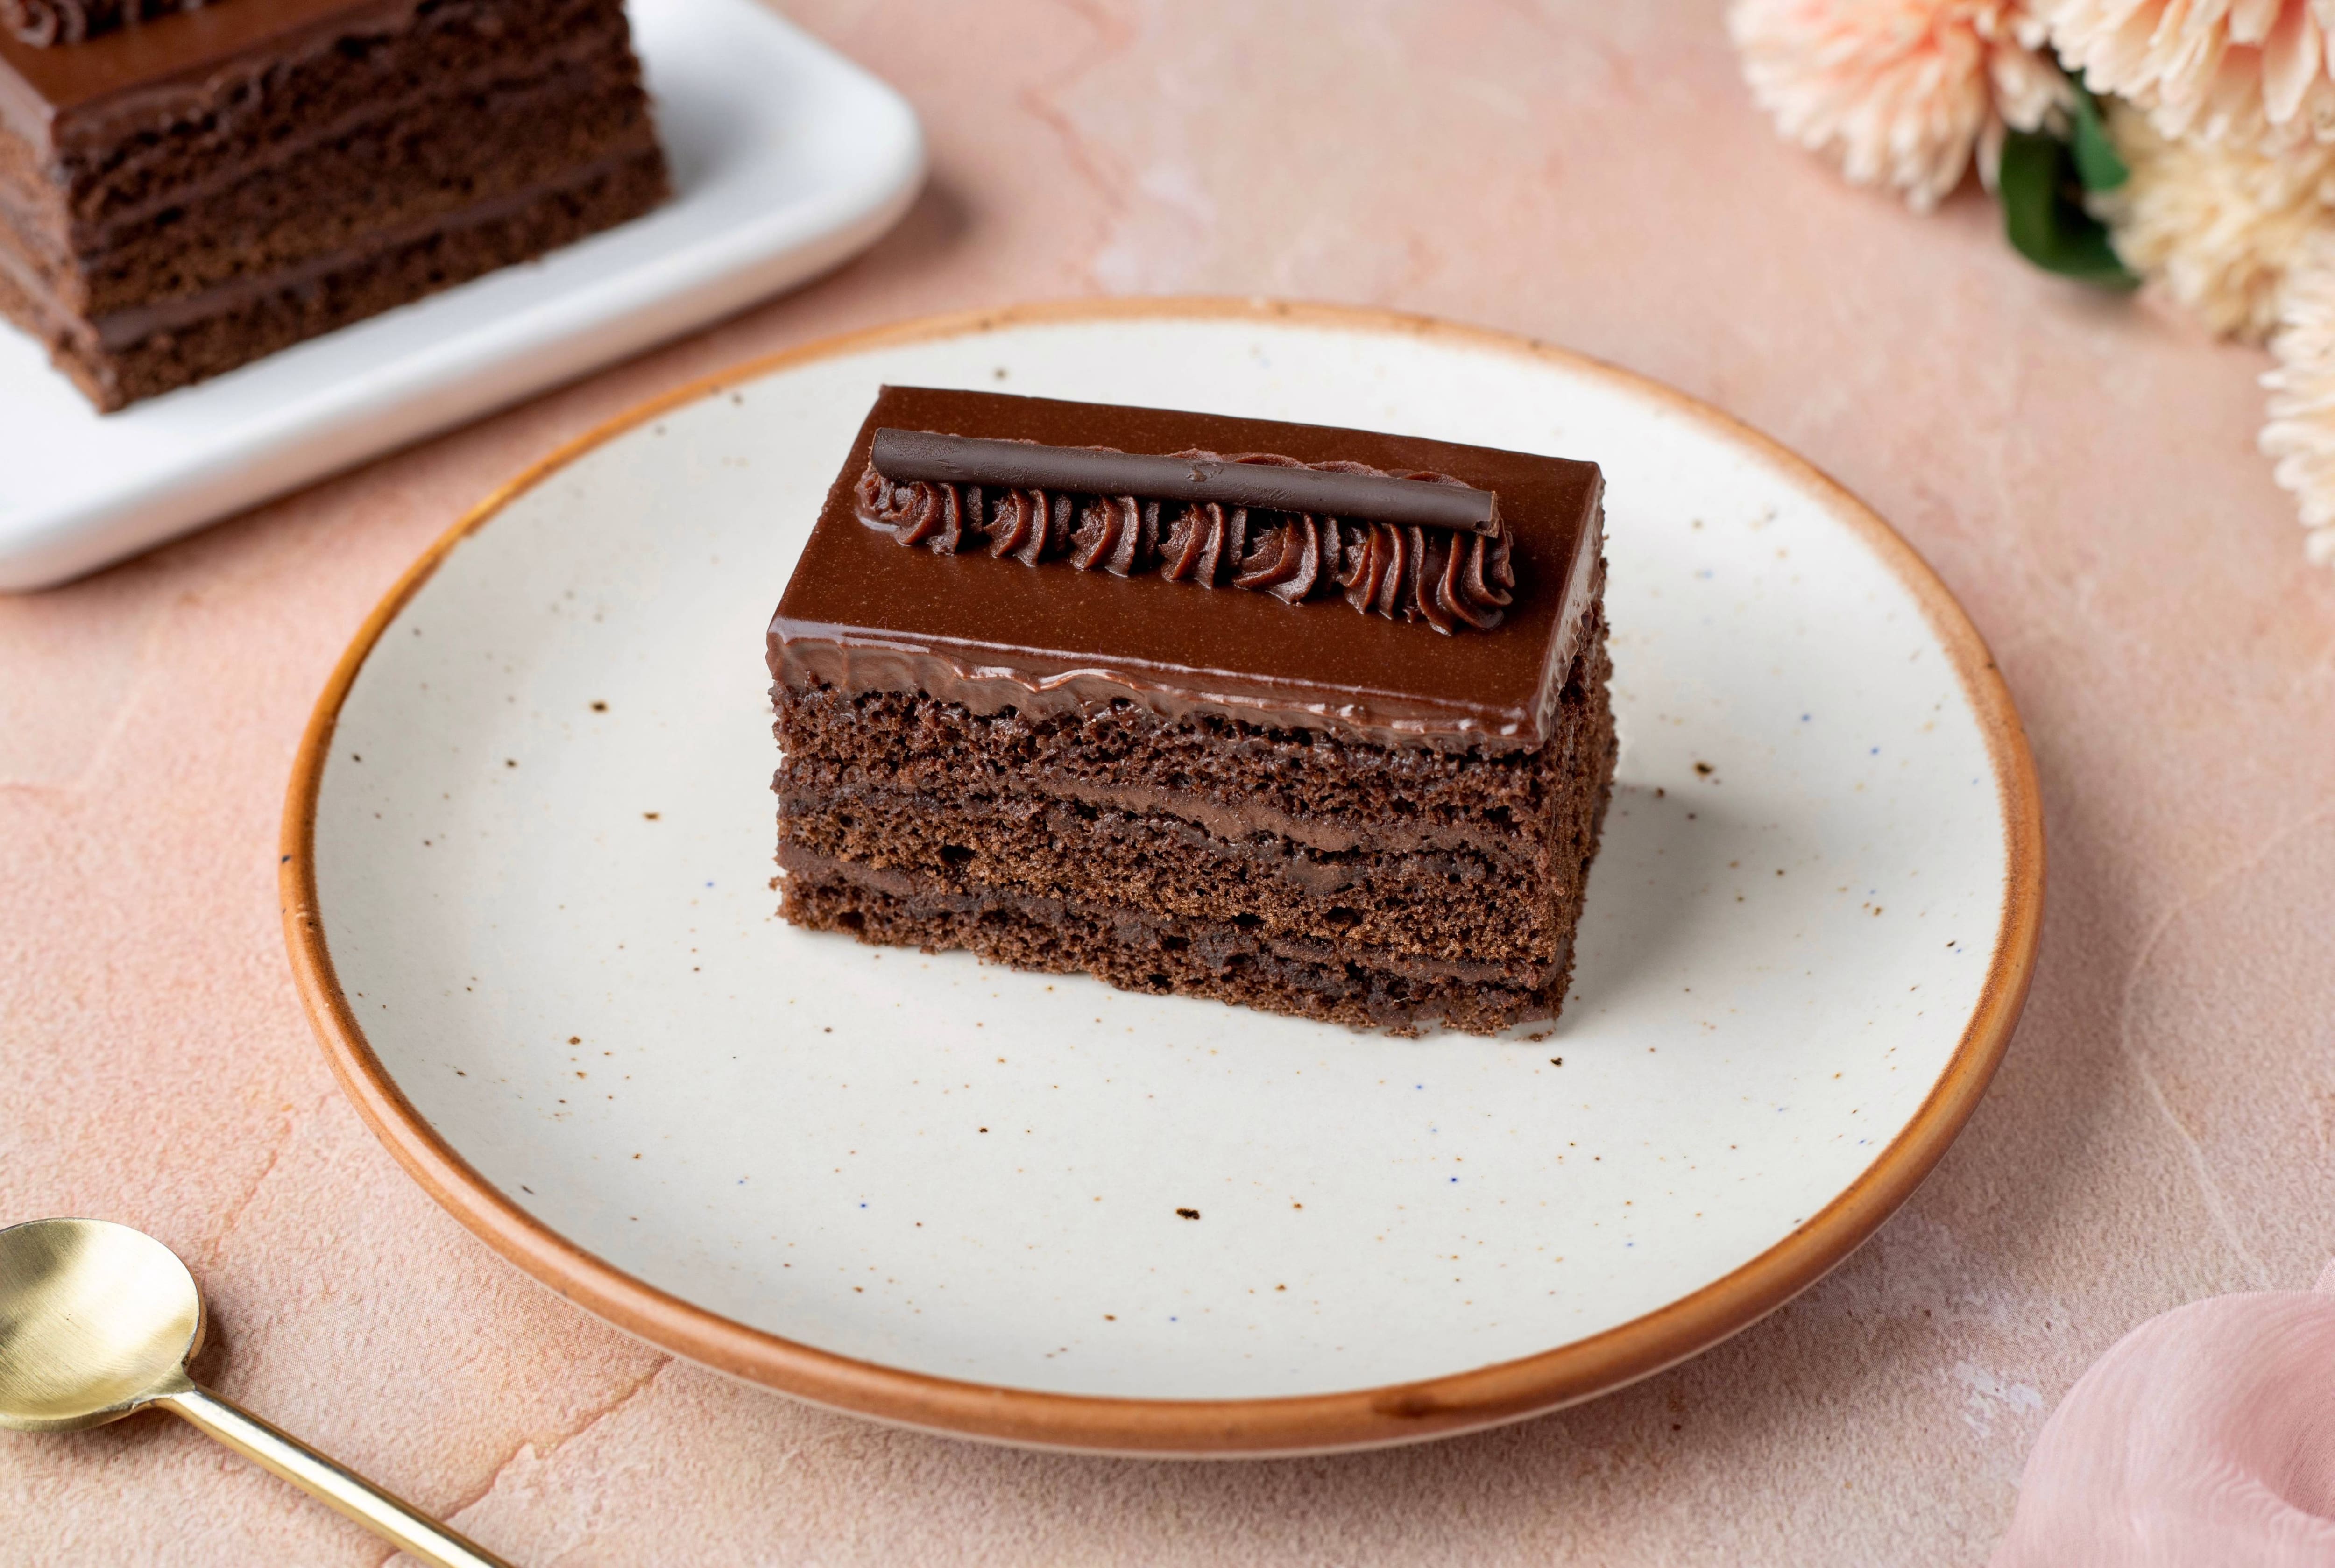 Jalal sons Chocolate cake || Chocolate cake || #chocolatecake #cake #baking  #shorts - YouTube